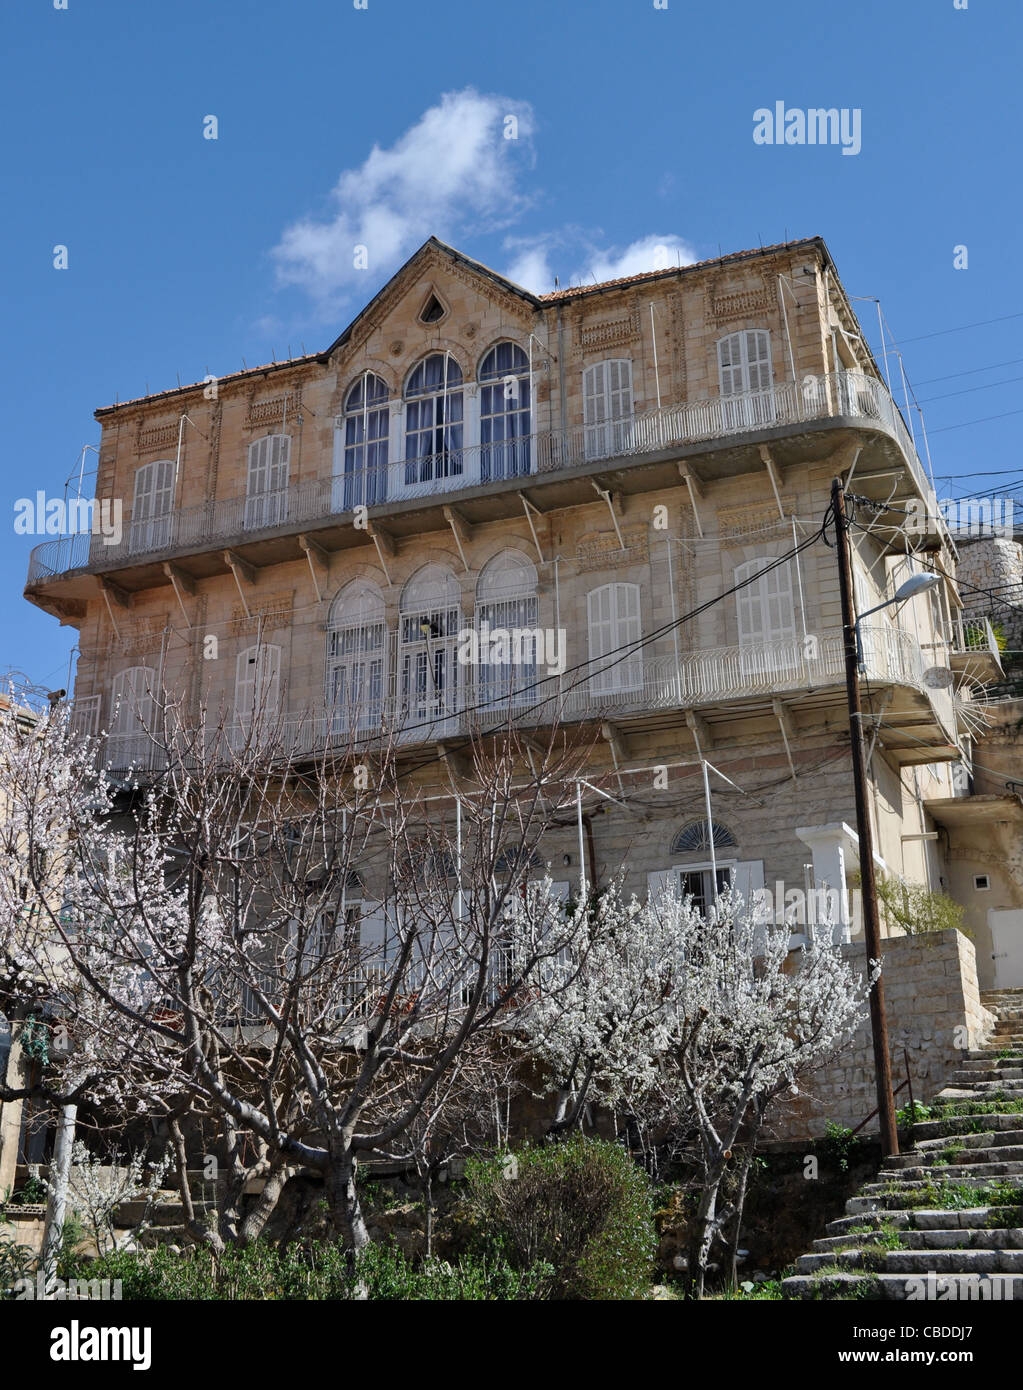 Zahle, superstite era Ottomana house, ubicazione del 1860 massacro in scontri fra cristiani e drusi. Foto Stock